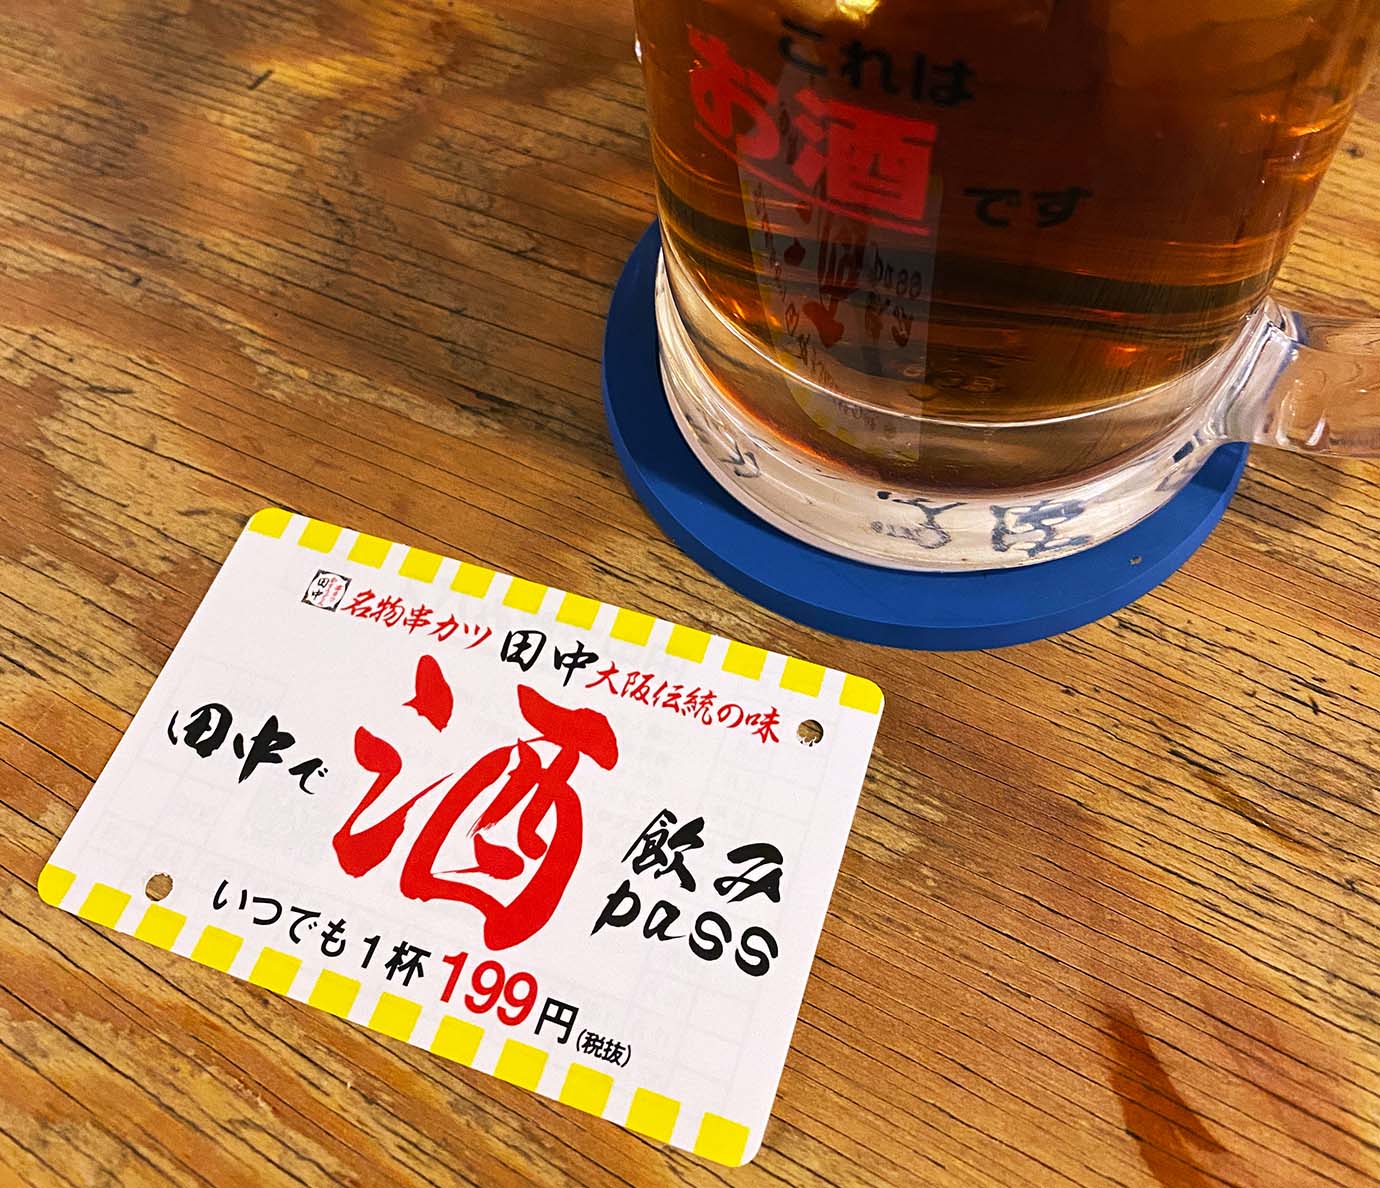 【激安グルメ】串カツ田中のドリンクが199円になる定期券がスゴイ / 田中で飲みPASS「いつでも1杯199円」